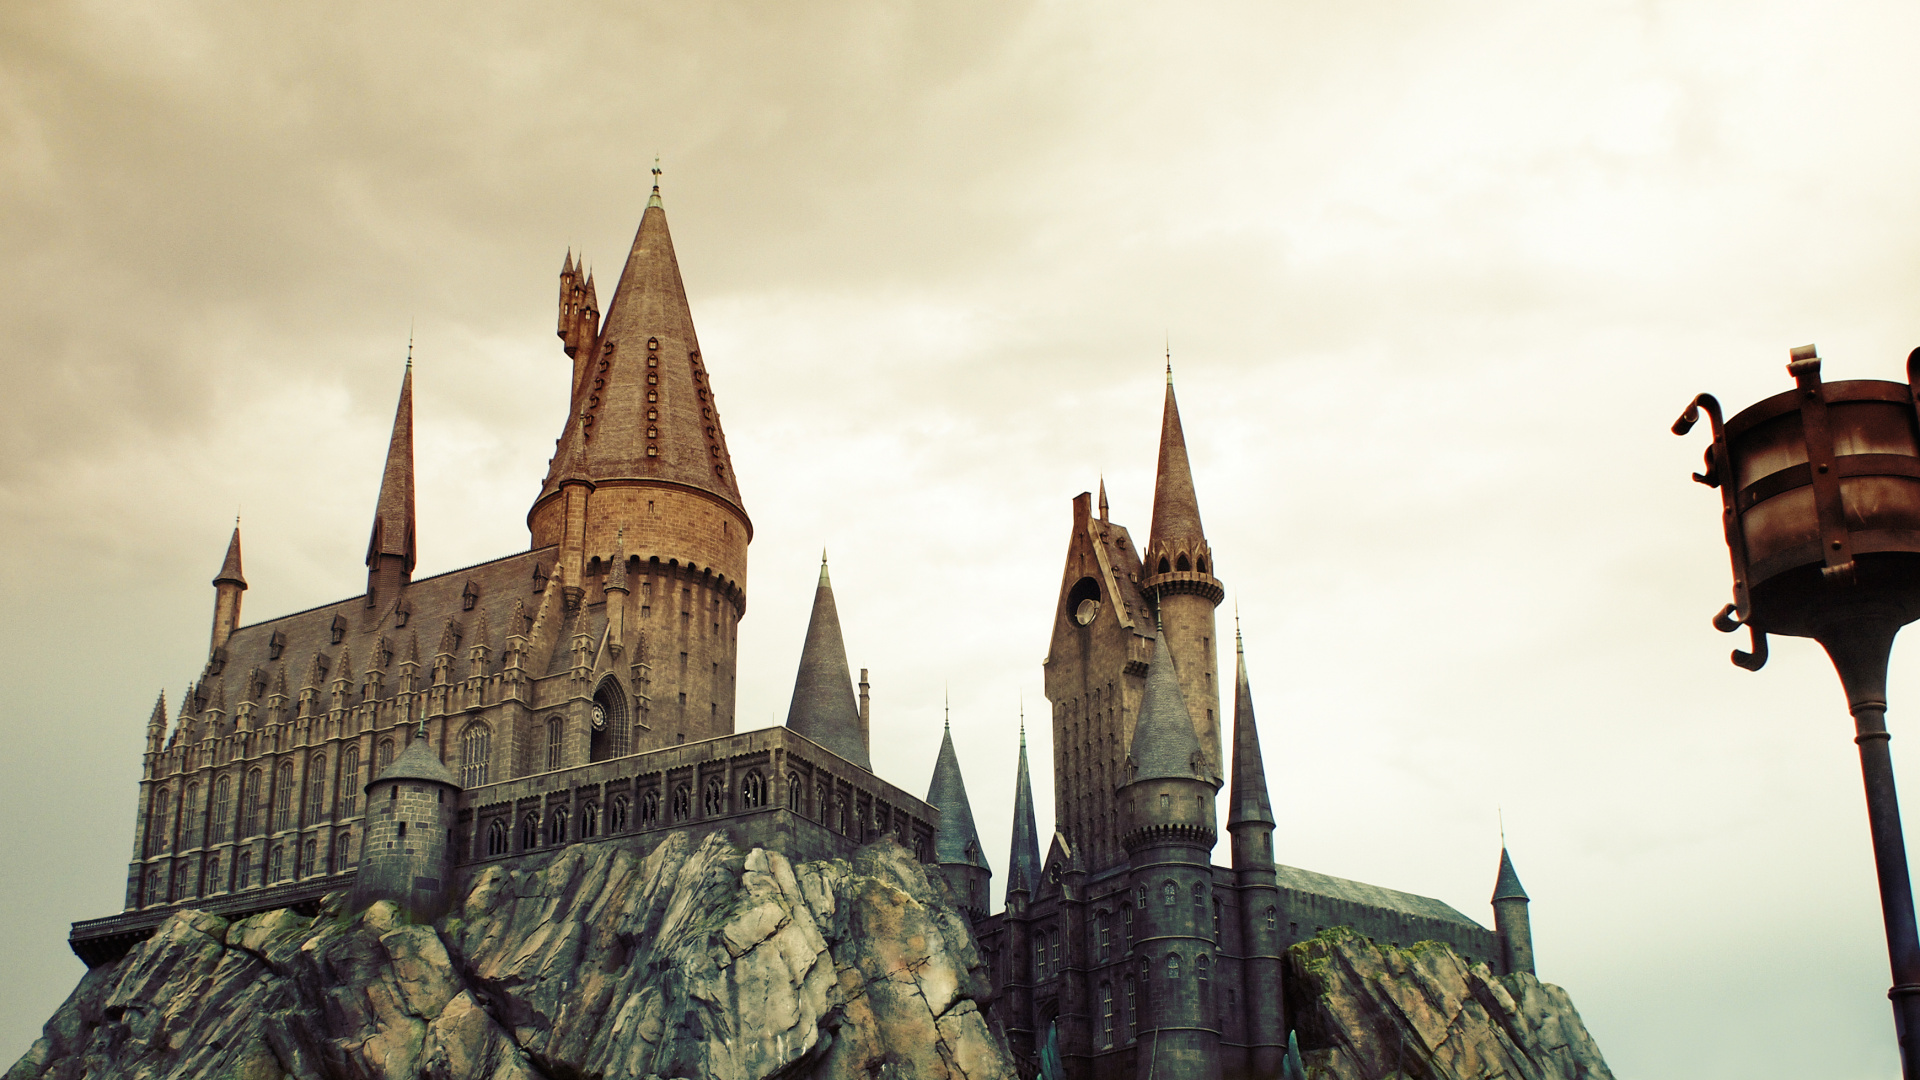 魔法世界的哈利*波特, 旅游景点, 里程碑, 中世纪建筑风格, 尖顶 壁纸 1920x1080 允许